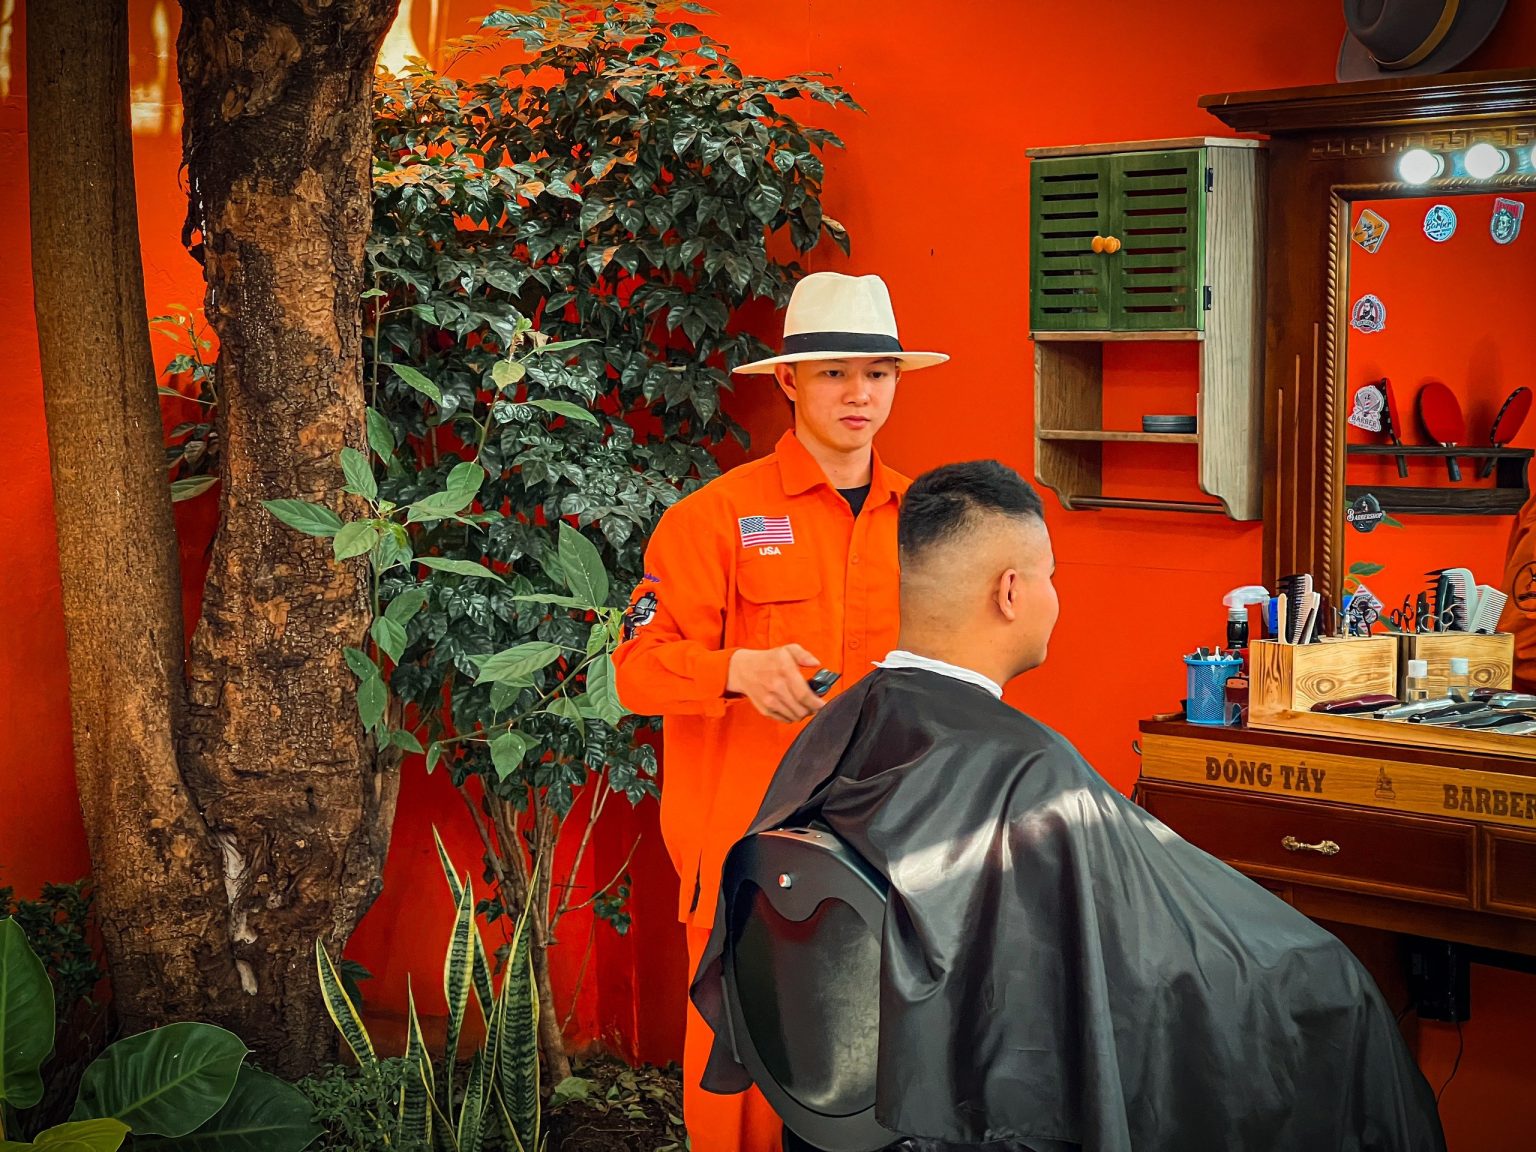 Khám Phá Thế Giới Mới Cùng Với Tiệm Cắt Tóc Nam "Đông Tây Barbershop"